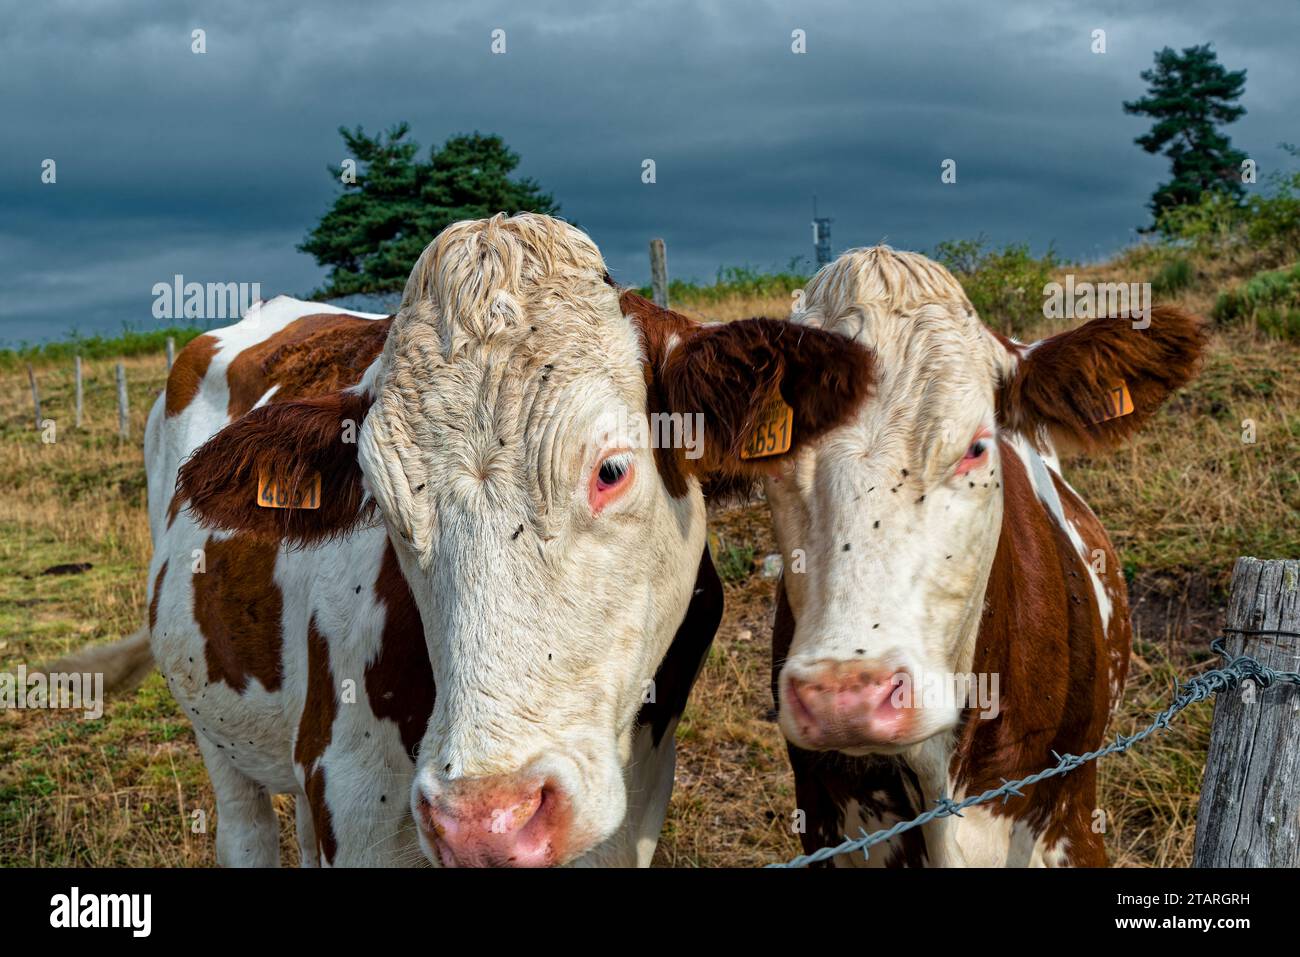 Vaches dans un Champ de lozere à la fin de la journée – Kühe in einem lozere-Feld (Region occitanie, Südfrankreich) am Ende des Tages Stockfoto